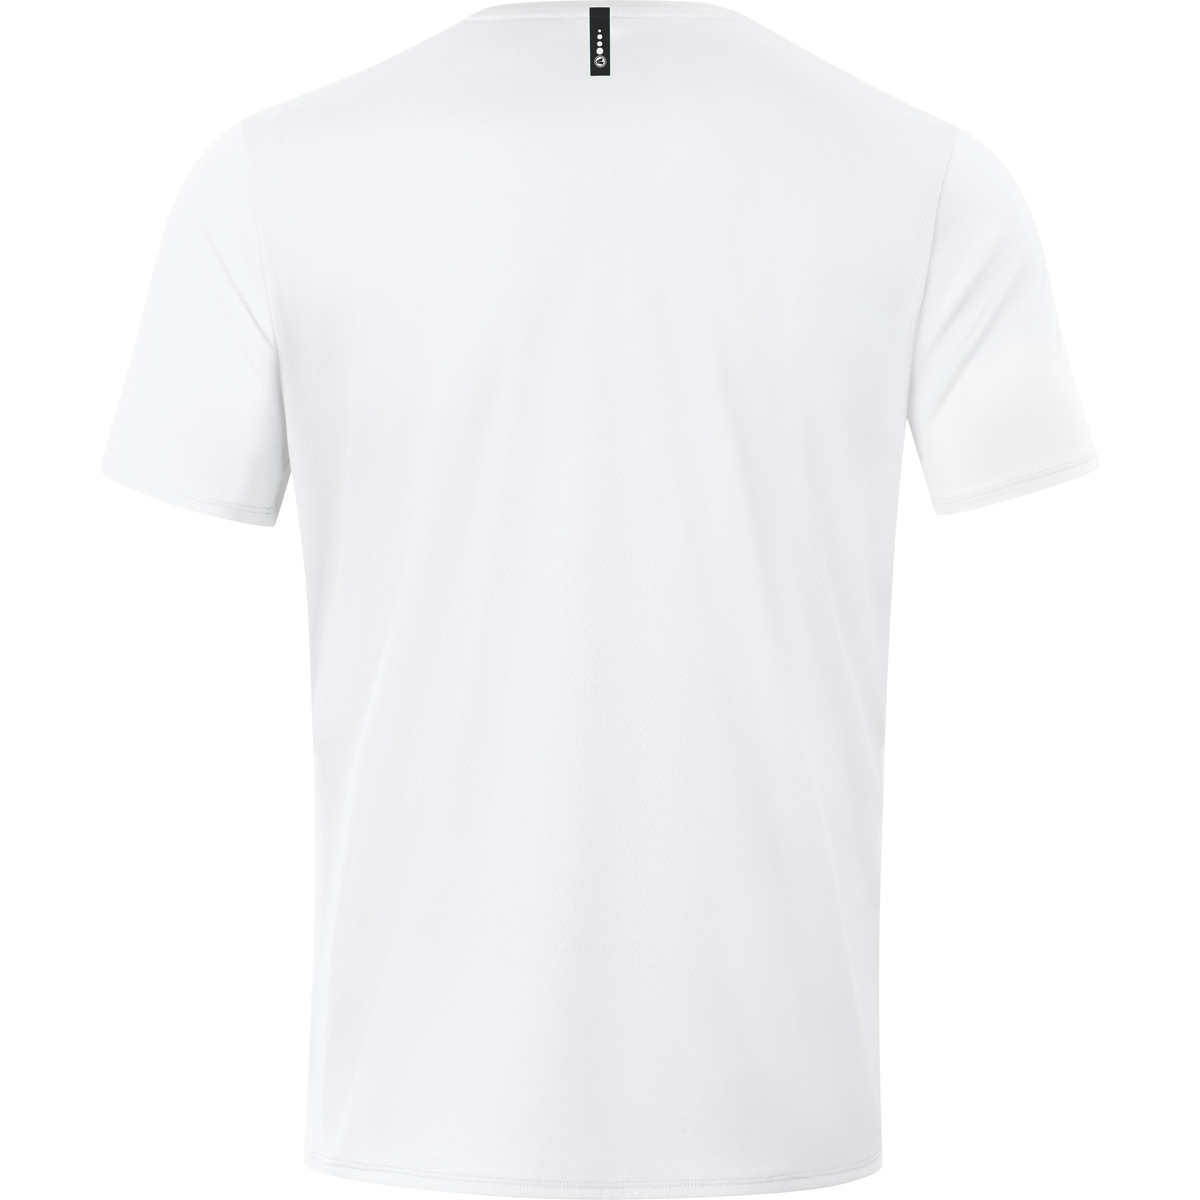 JAKO T-Shirt Champ 2.0 weiß, Gr. 6120 Herren, M